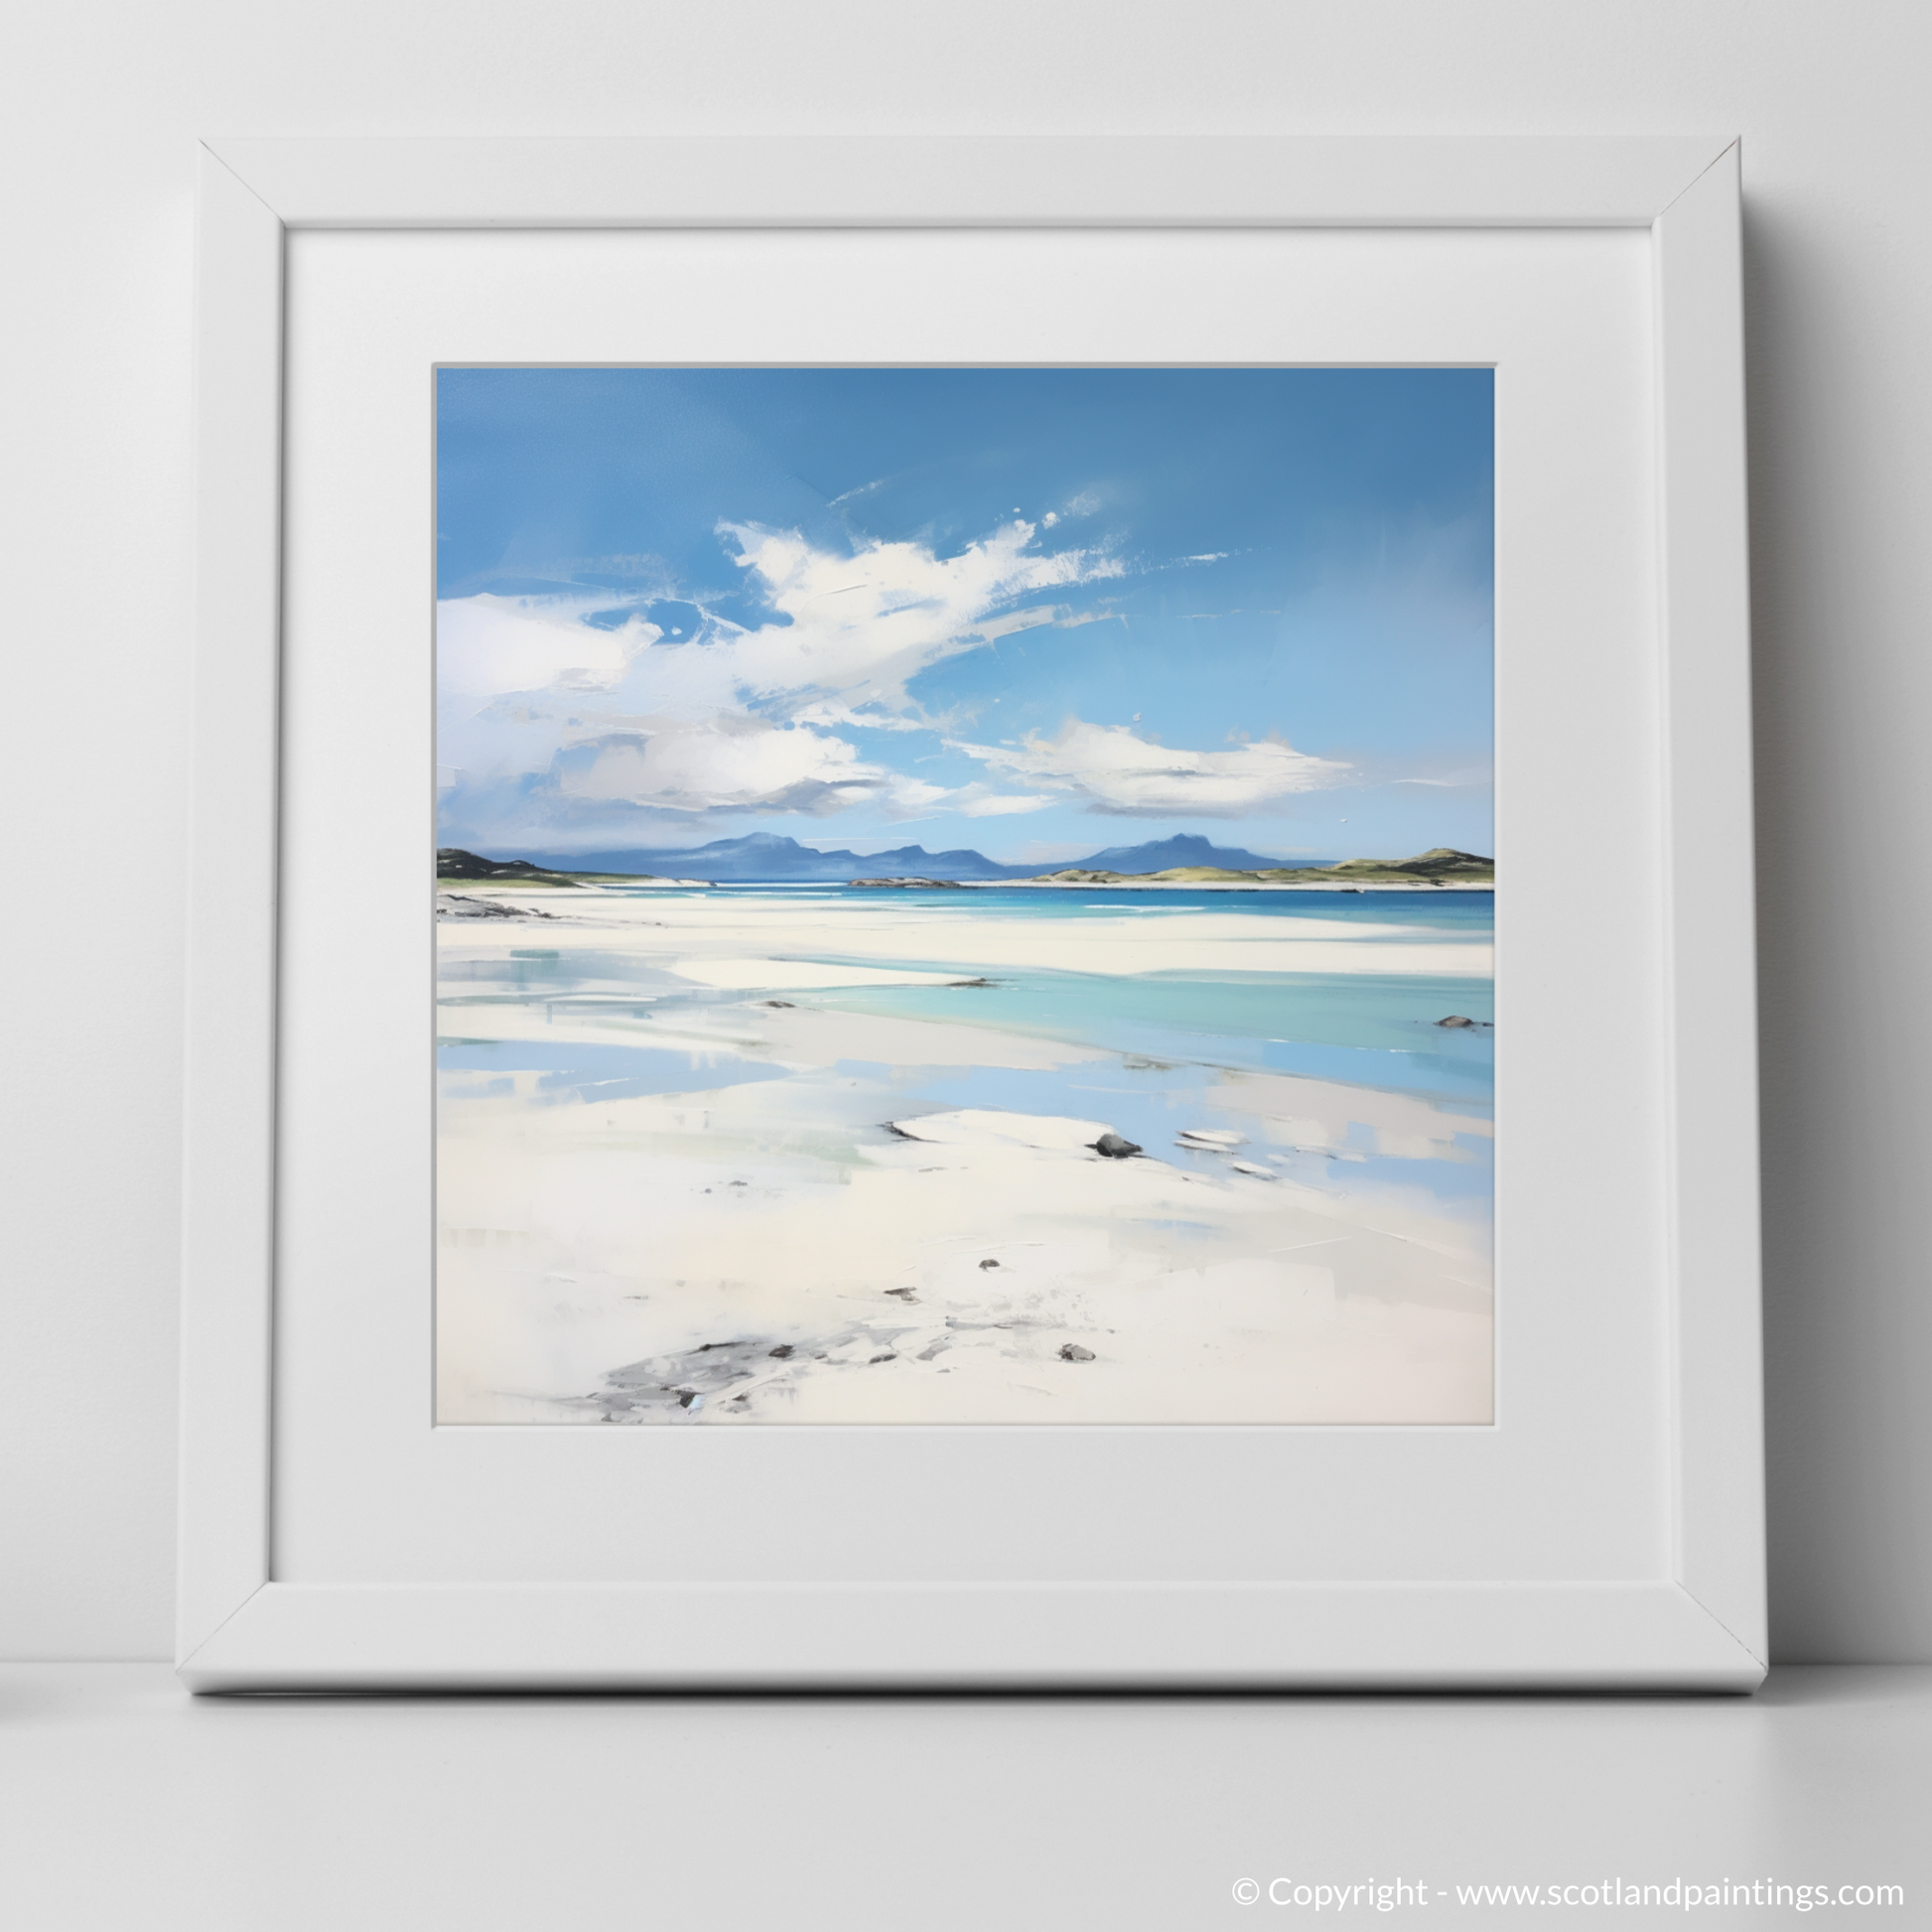 Art Print of Camusdarach Beach, Arisaig with a white frame